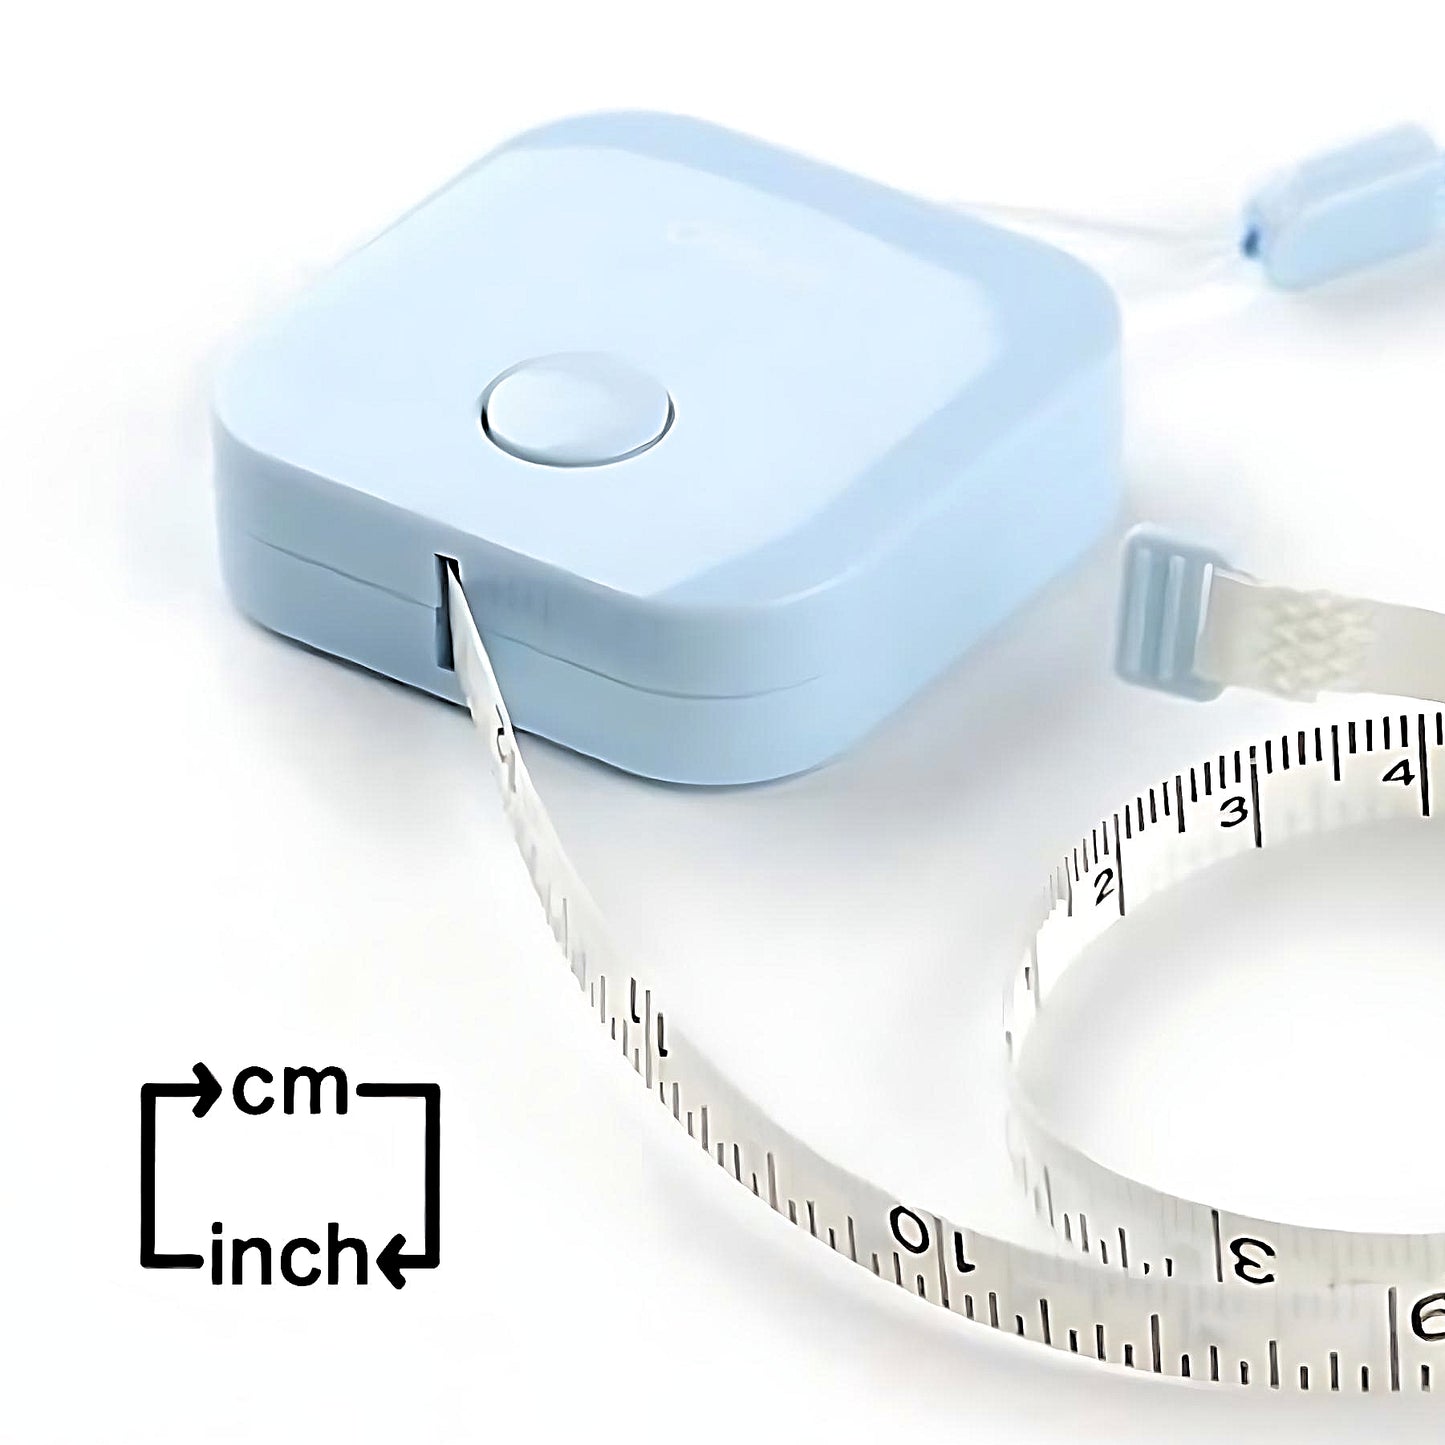 a sky blue Deli small tape measure